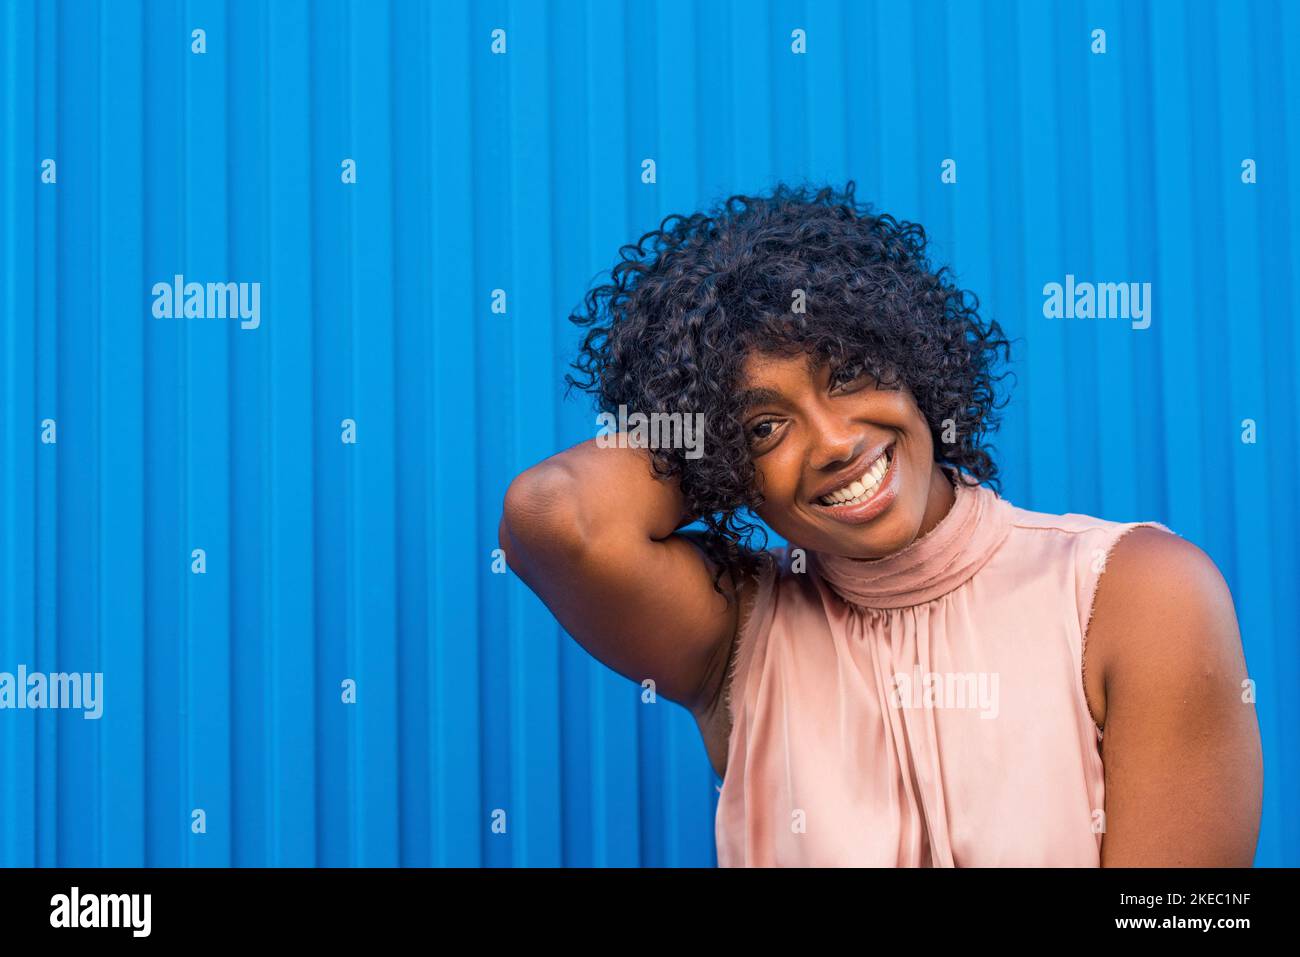 Farbenfrohes Porträt einer jungen afrikanischen und amerikanischen Frau, die lächelt und die Kamera anschaut, mit blauen, schönen Farben Stockfoto